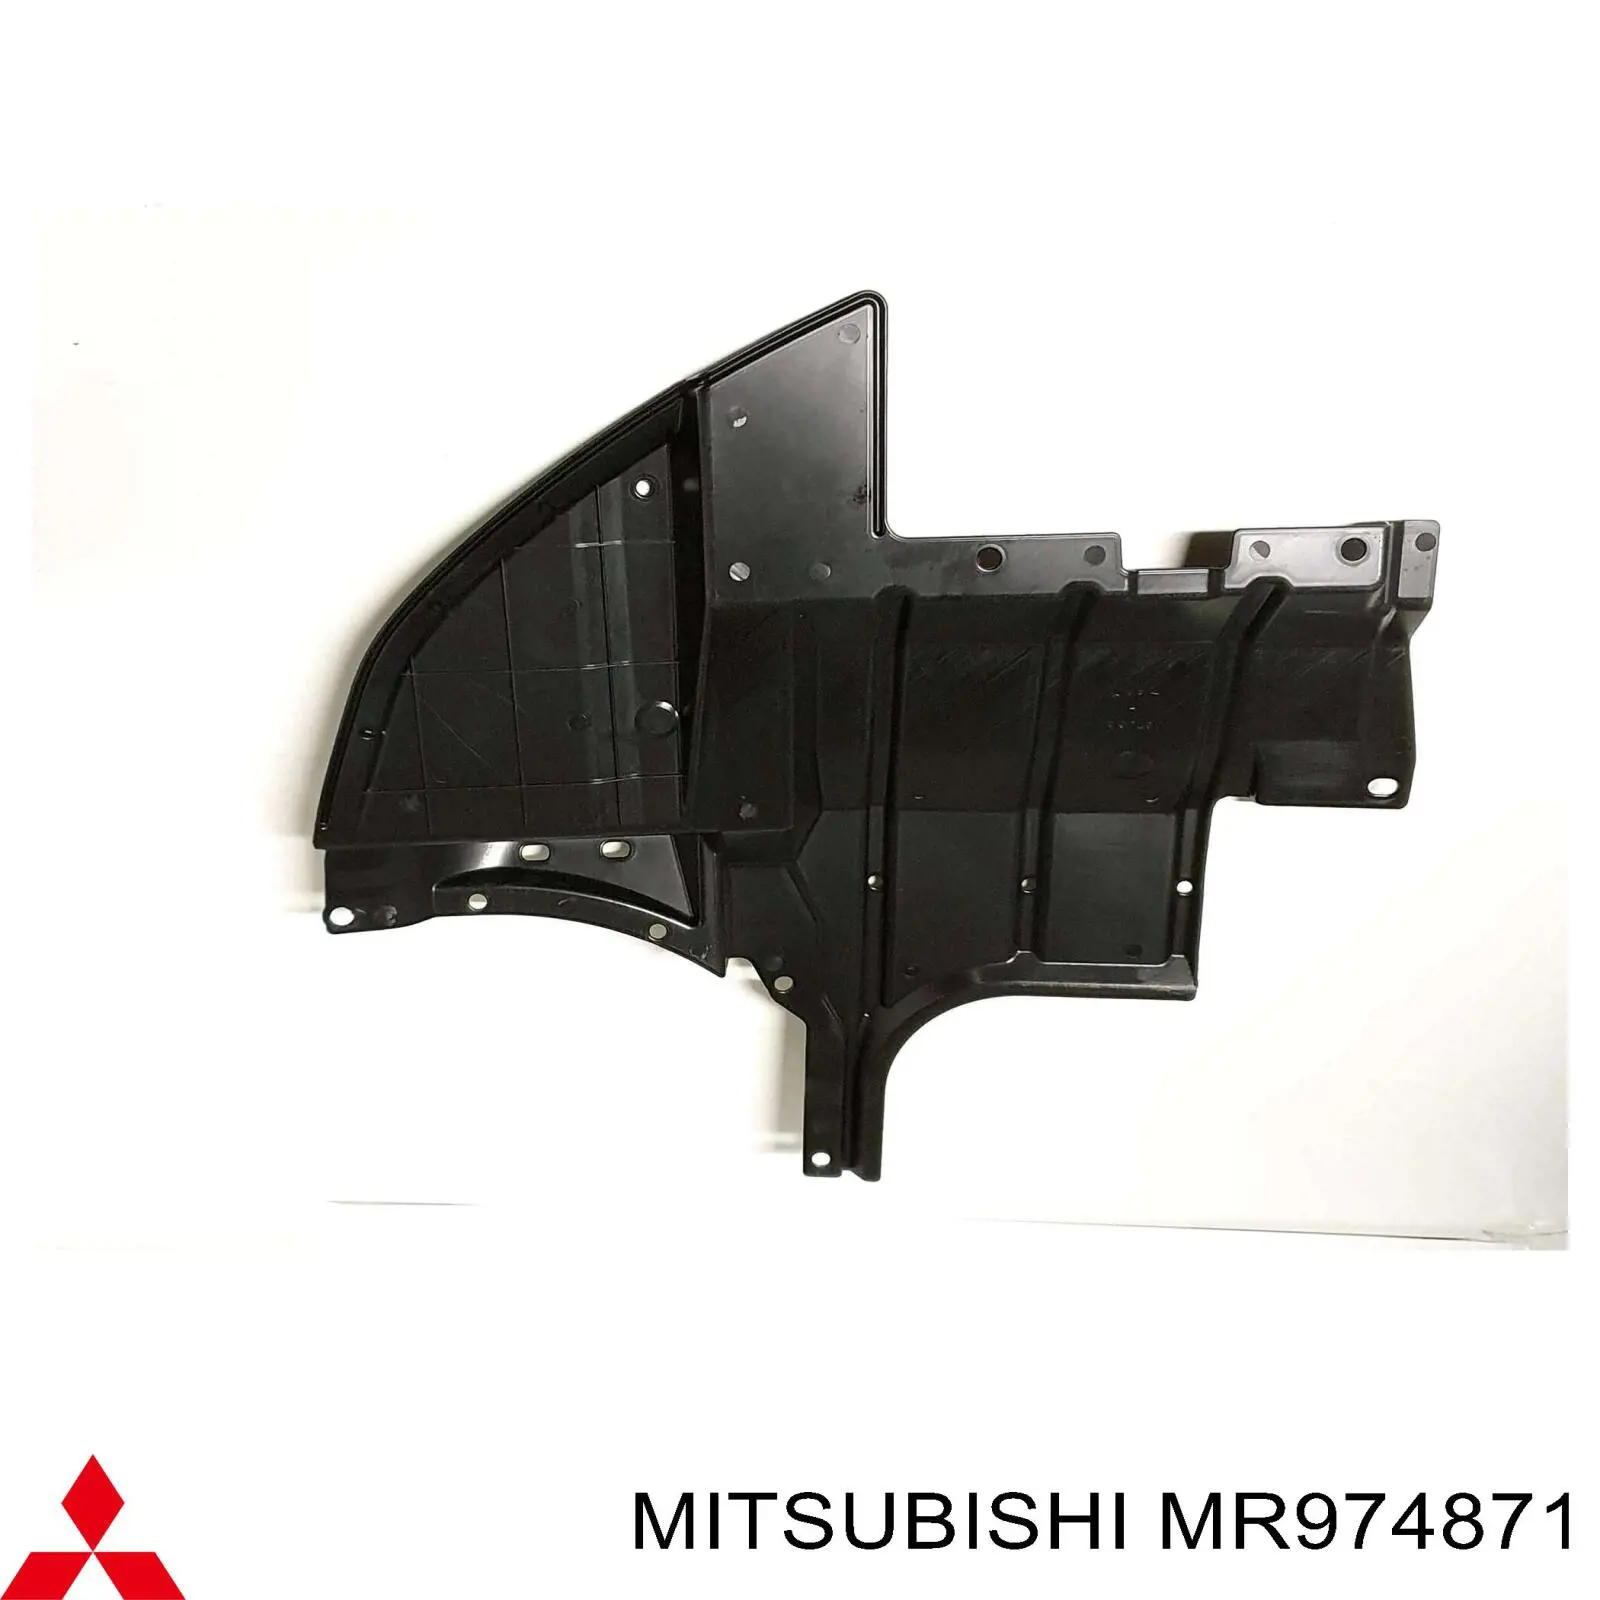 MR974871 Mitsubishi защита двигателя левая